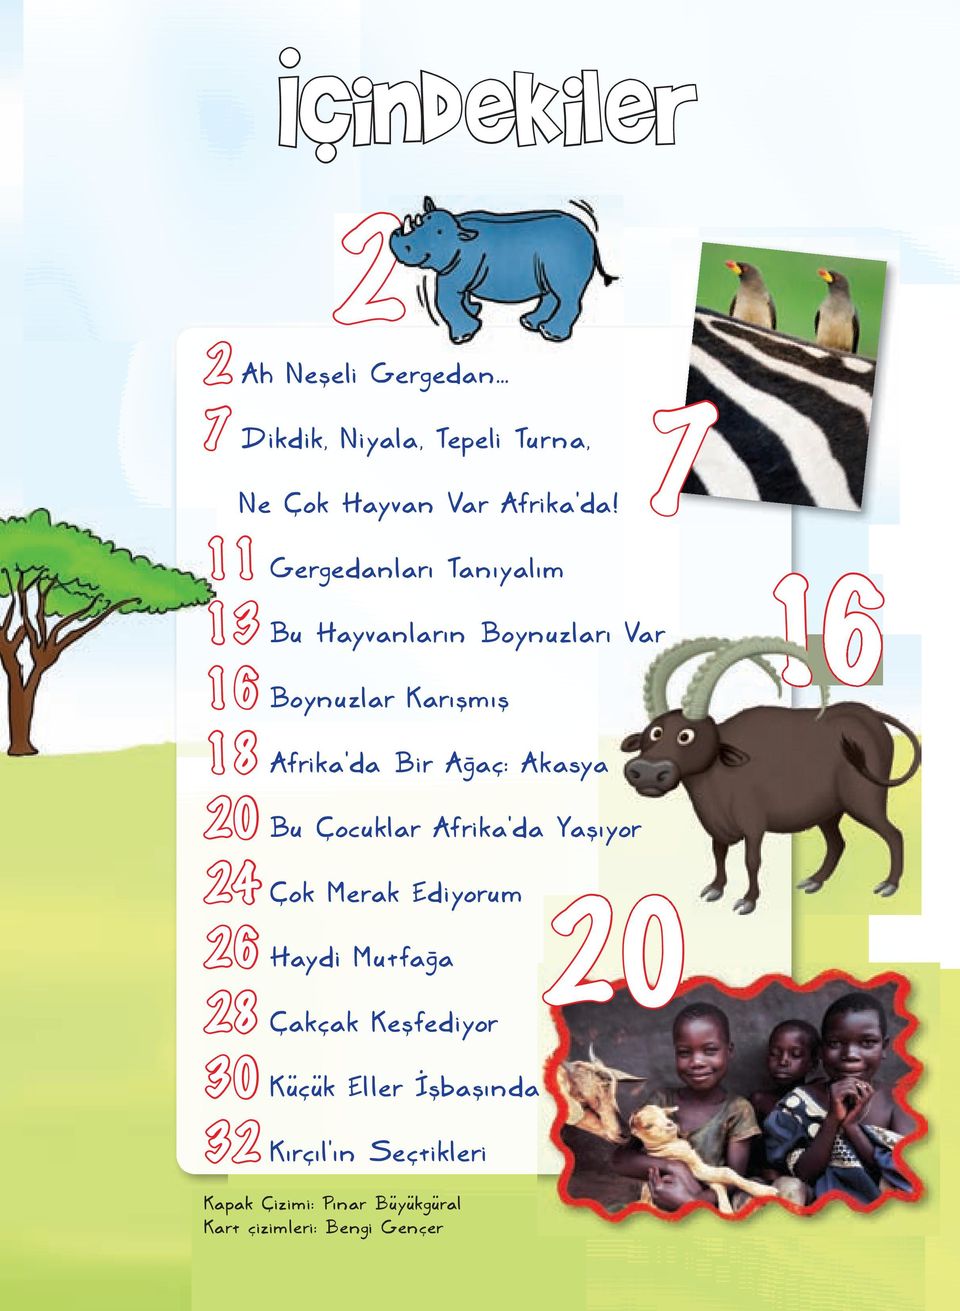 Ağaç: Akasya 20 Bu Çocuklar Afrika'da Yaşıyor 24 Çok Merak Ediyorum 26 Haydi Mutfağa 28 Çakçak